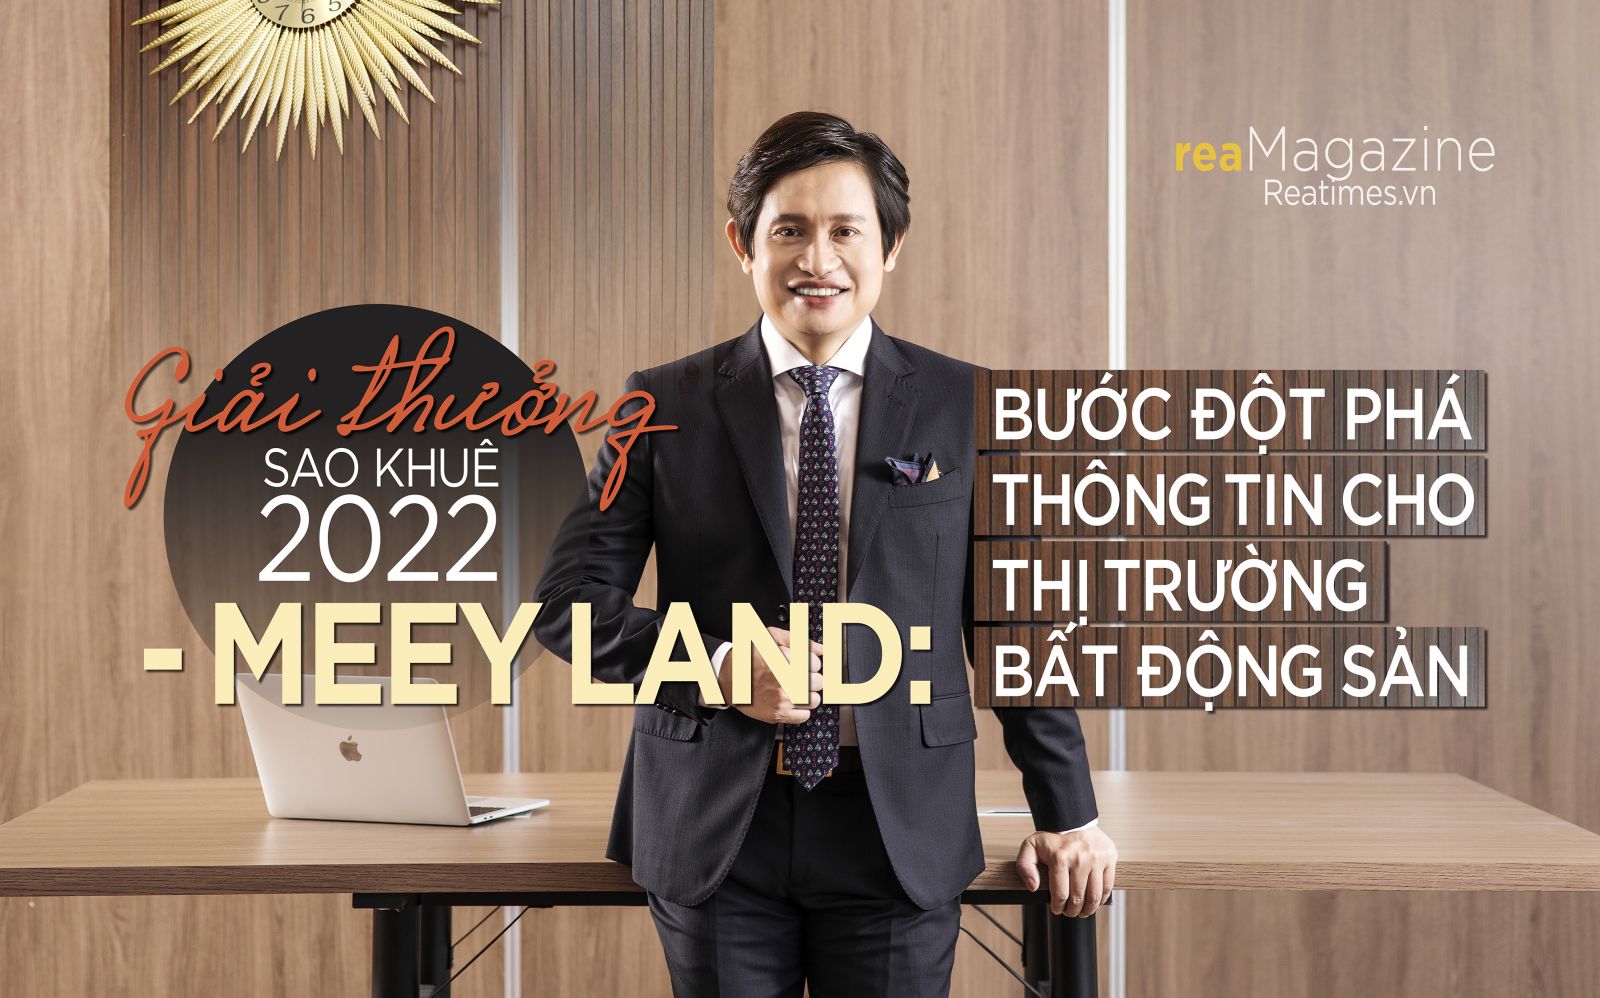 Giải thưởng Sao Khuê 2022 - Meey Land: Bước đột phá thông tin cho thị trường bất động sản